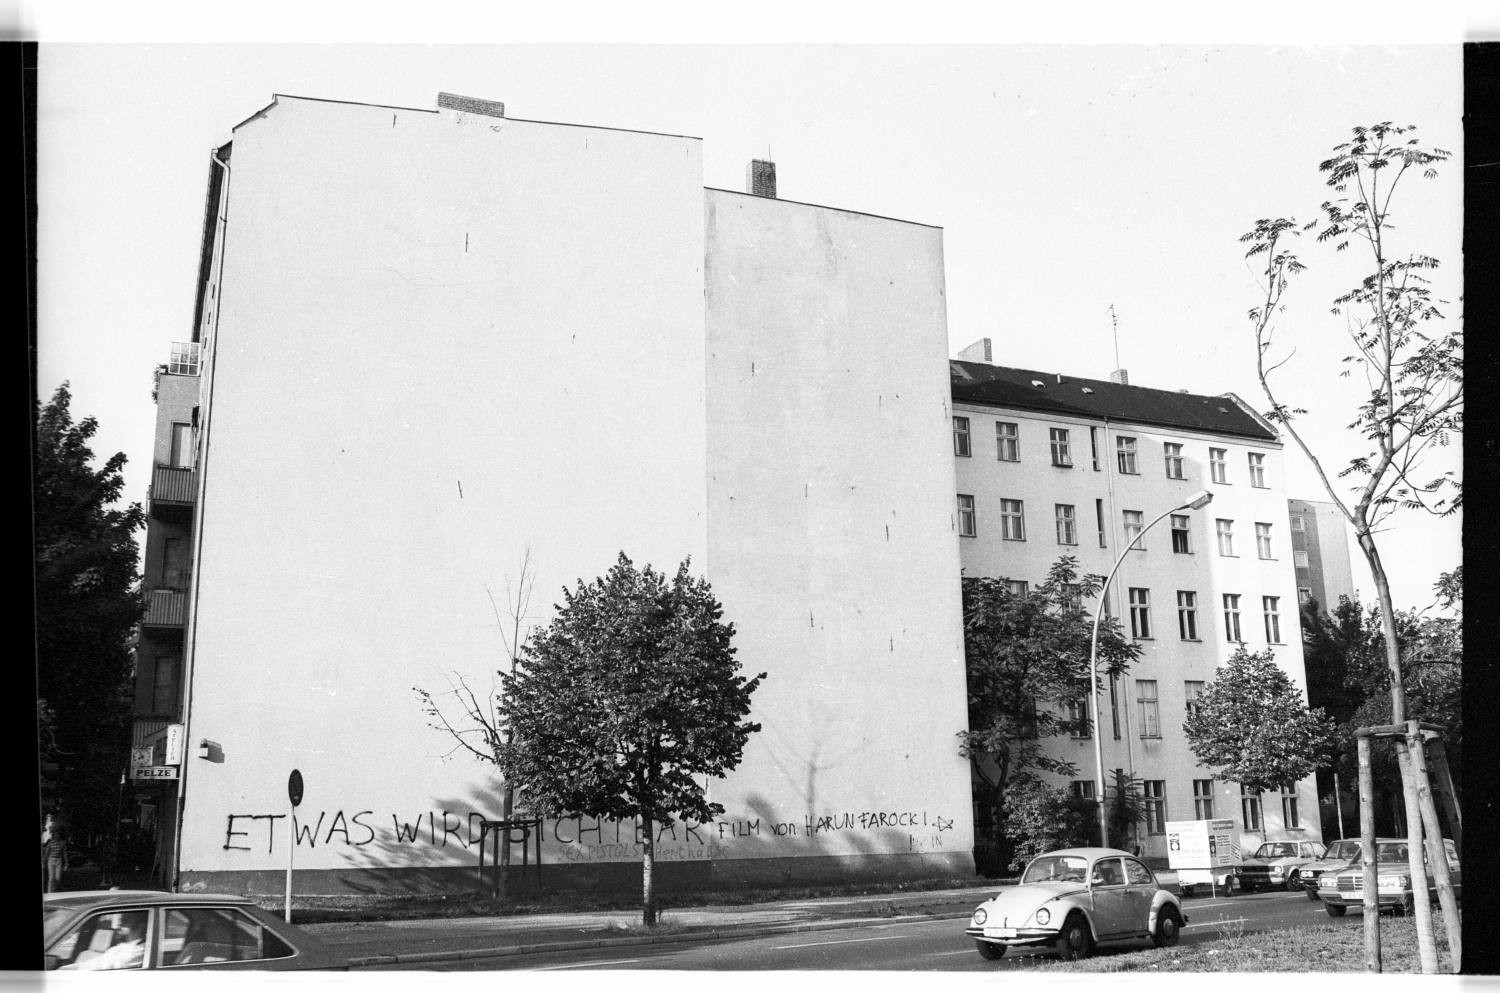 Kleinbildnegative: Mietshaus, Lietzenburger Str. 11, 1982 (Museen Tempelhof-Schöneberg/Jürgen Henschel RR-F)